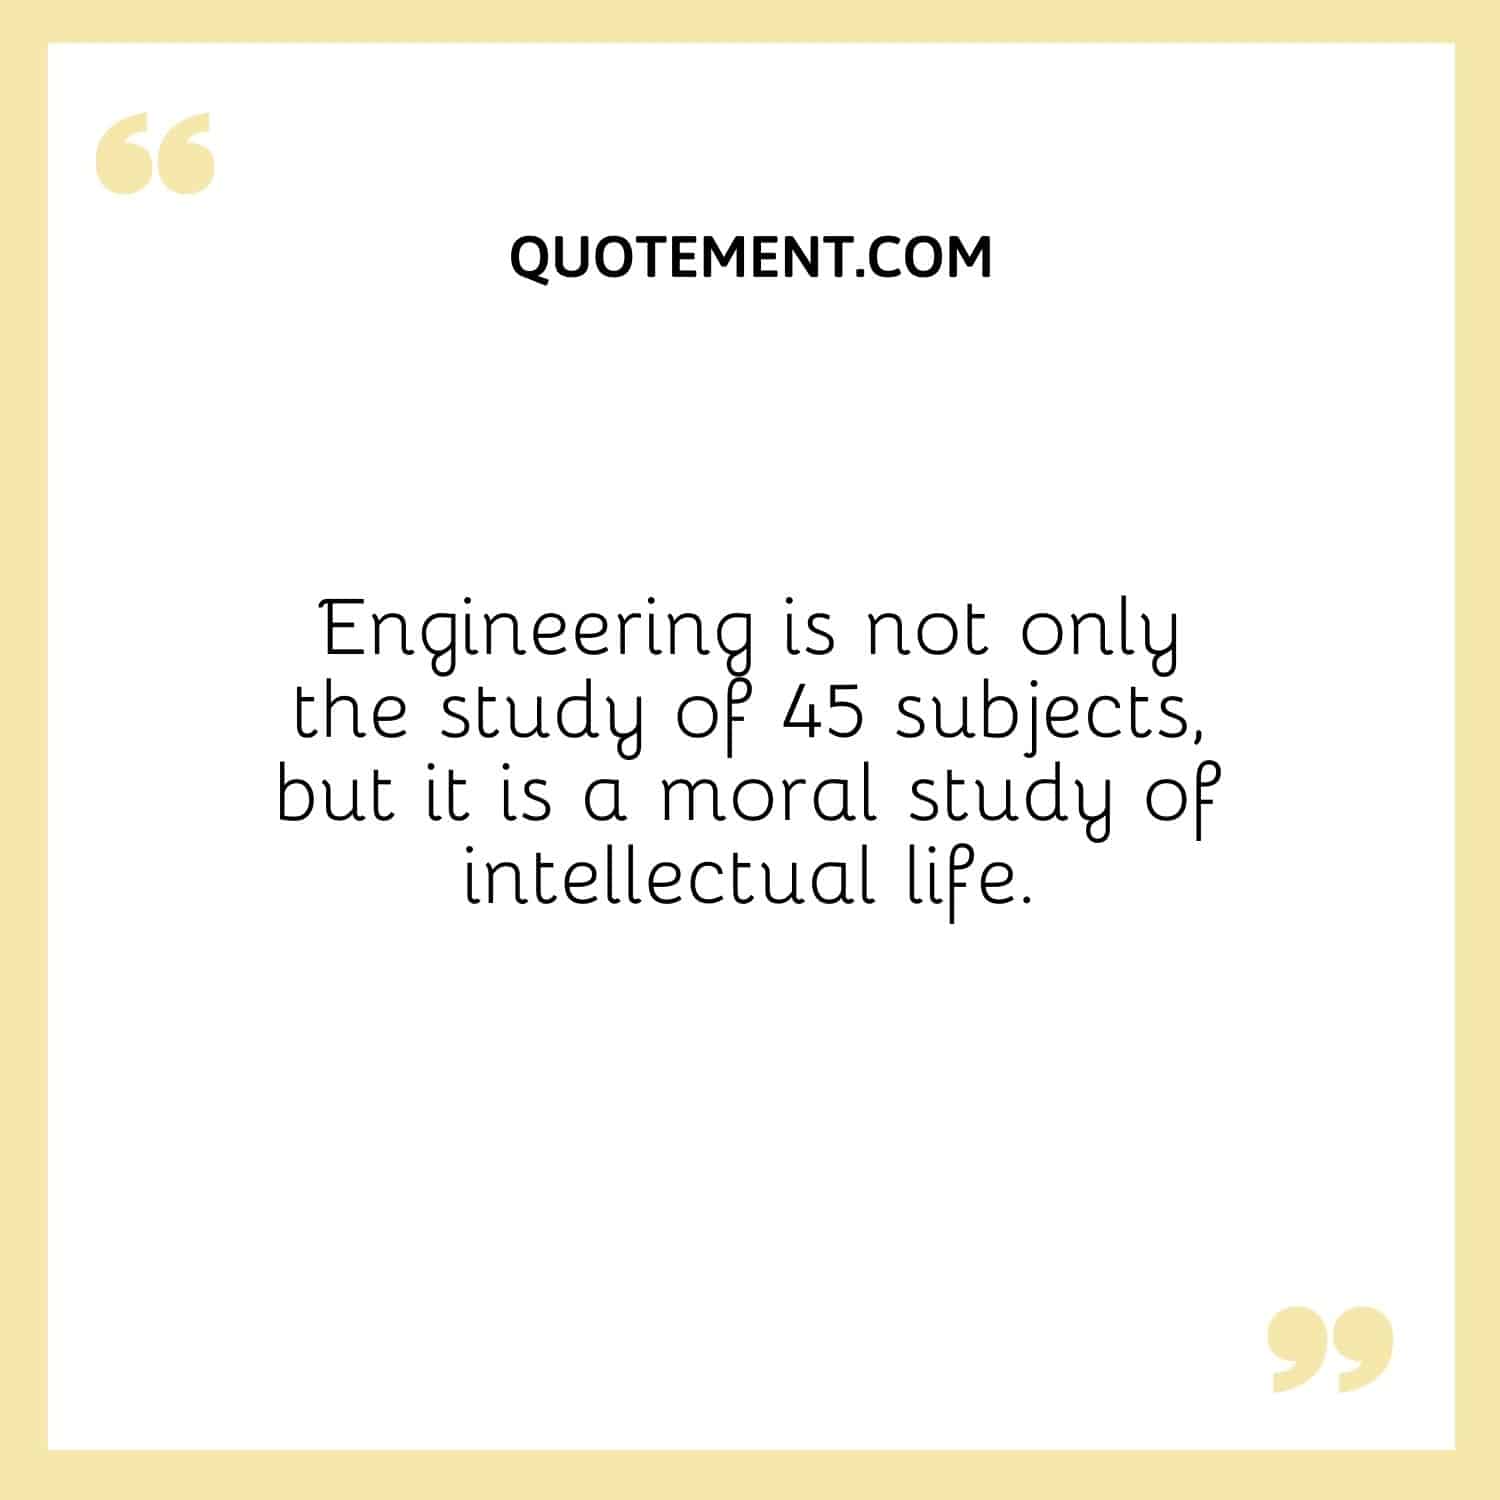 La ingeniería no es sólo el estudio de 45 materias, sino que es un estudio moral de la vida intelectual.